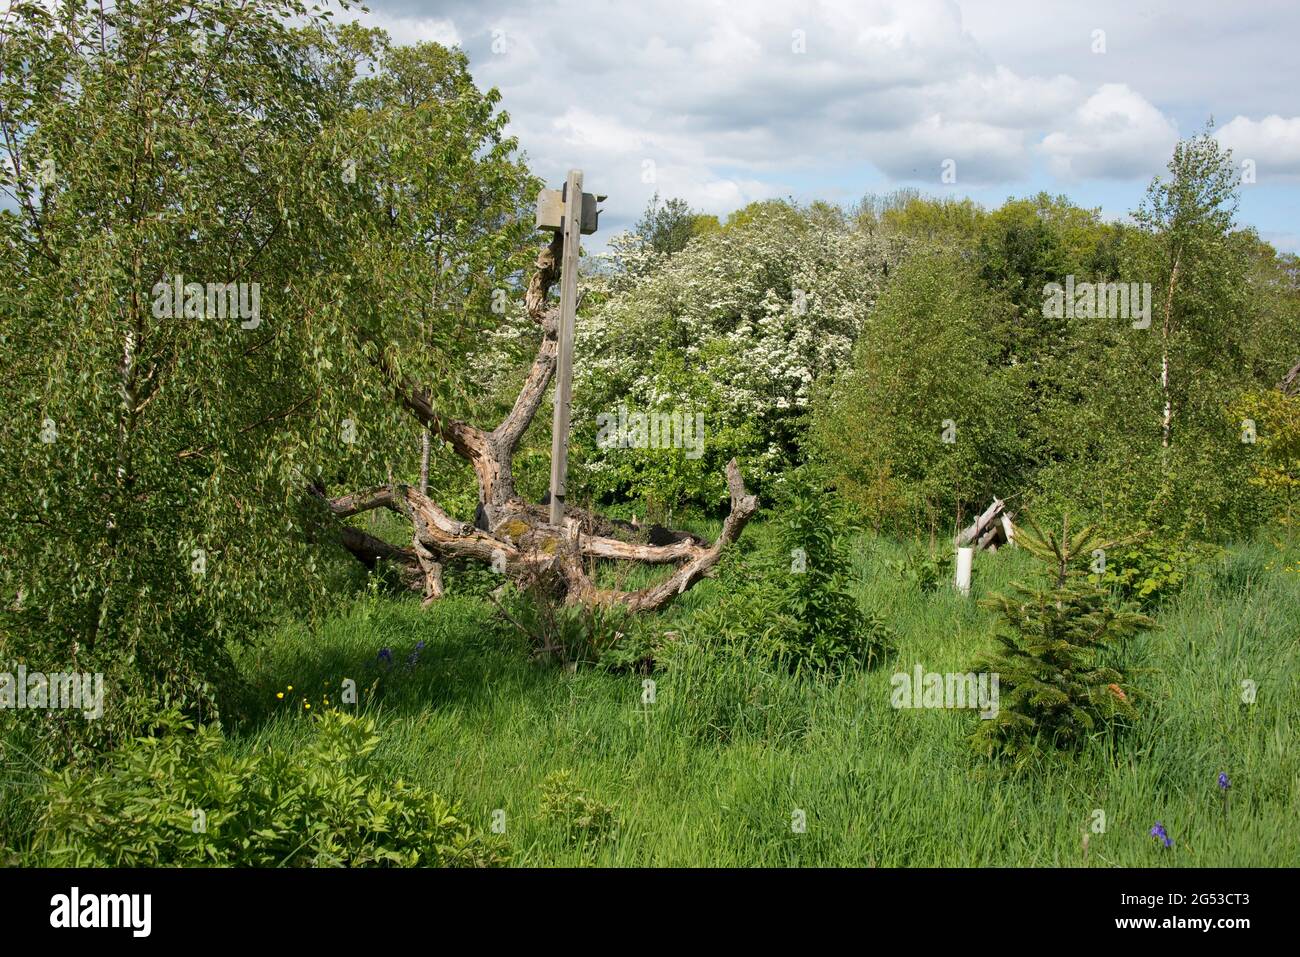 Piccolo bosco giovane e ruvido giardino con alberi in primavera, erba lunga, bluebells e un mucchio di legno e un habitat di rifugio alberi caduti, Berkshire, maggio Foto Stock